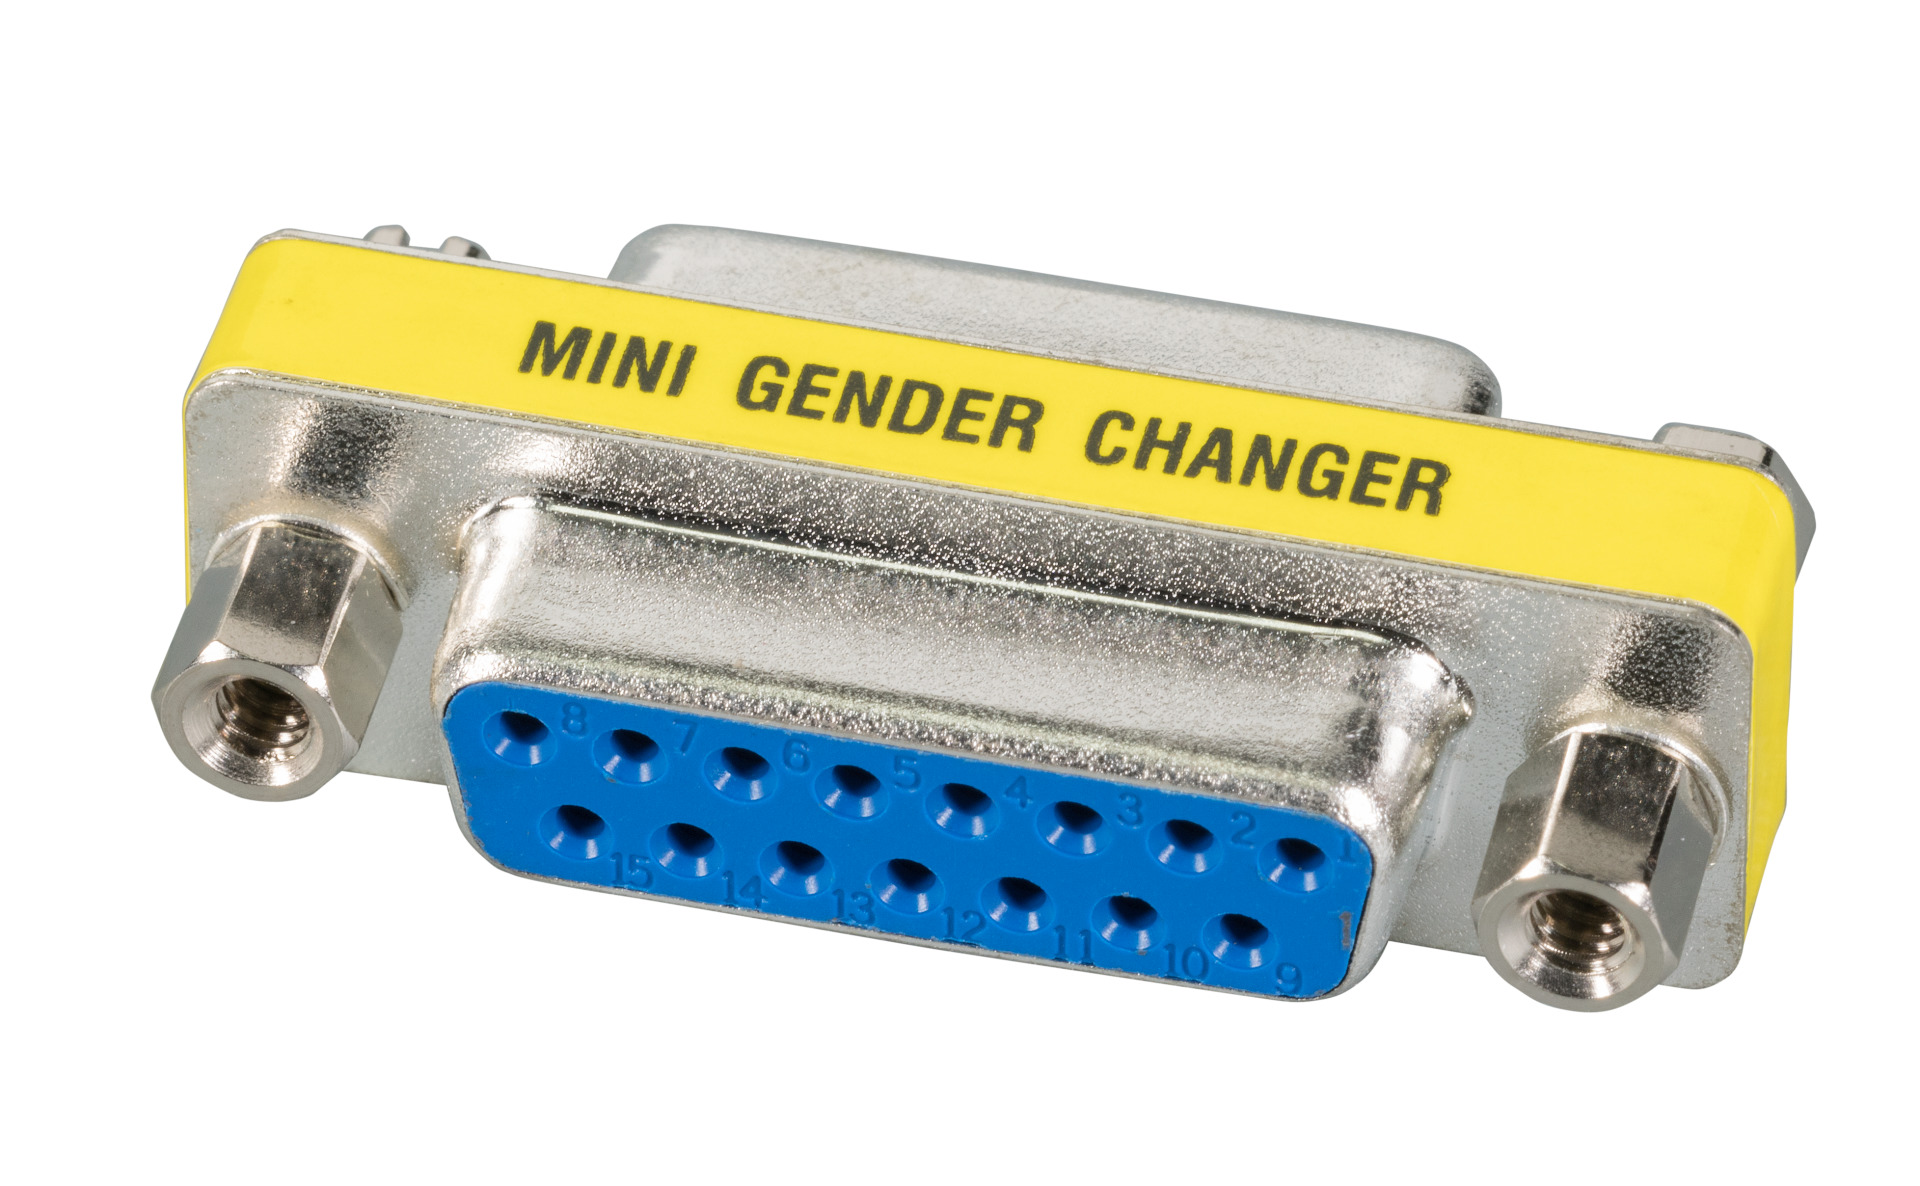 Mini Gender Changer, DSub 15, F-F